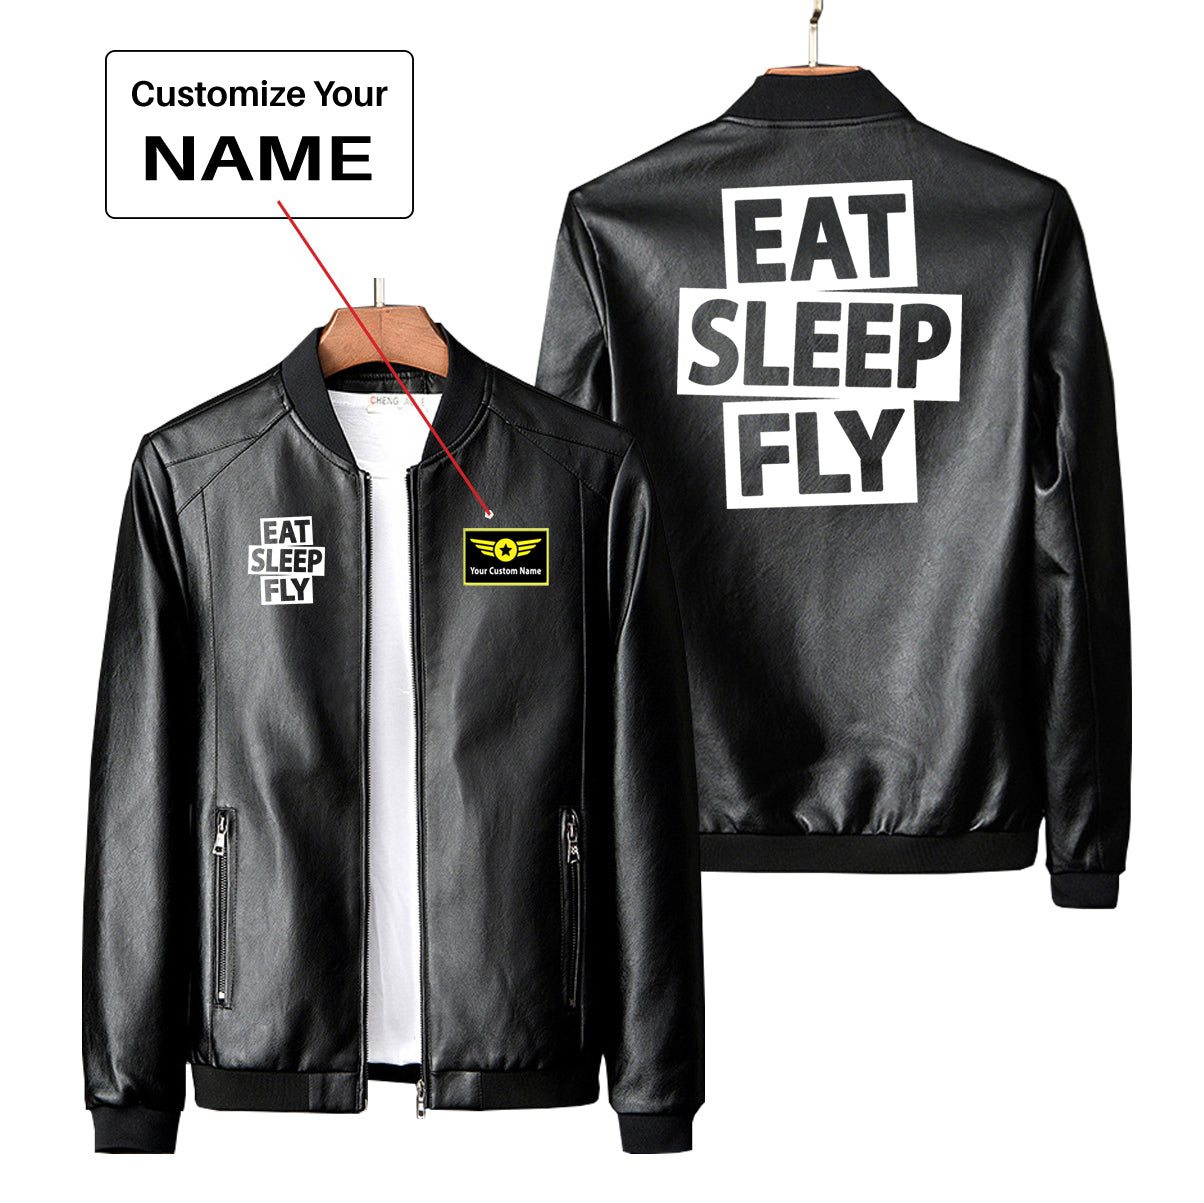 Eat Sleep Fly Designed PU Leather Jackets